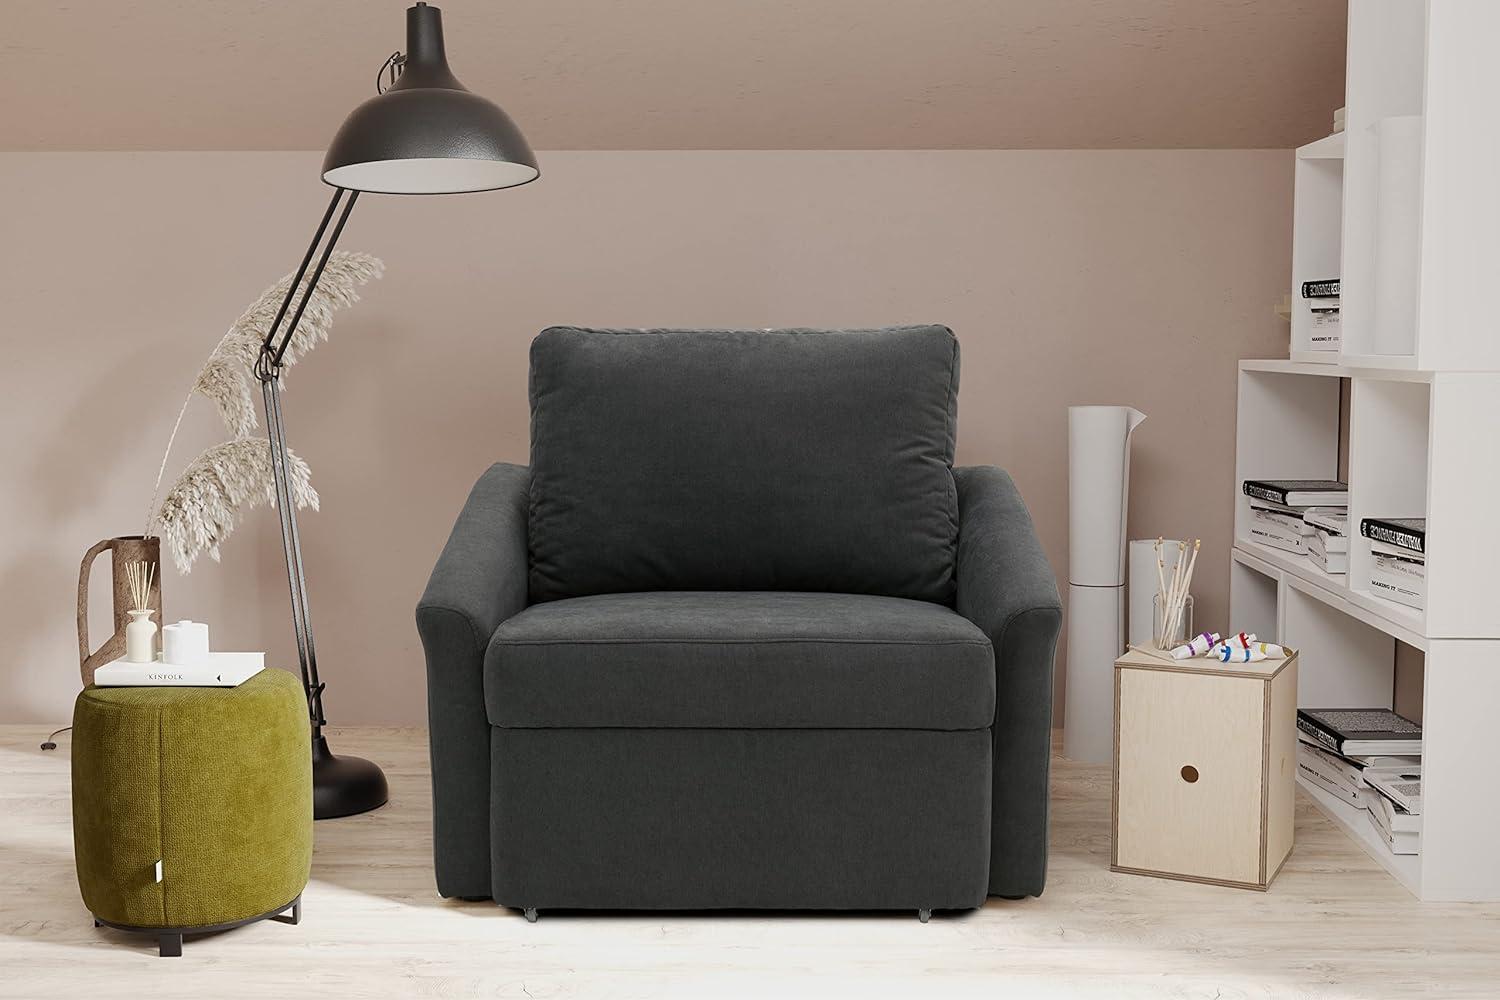 Domo Collection Relax Boxspringsessel / Sessel mit Boxspring und Schlaffunktion / Dauerschläfer fürs Gästezimmer / Maße: 108/96/86 cm (B/T/H) / Farbe: dunkelgrau (grau) Bild 1